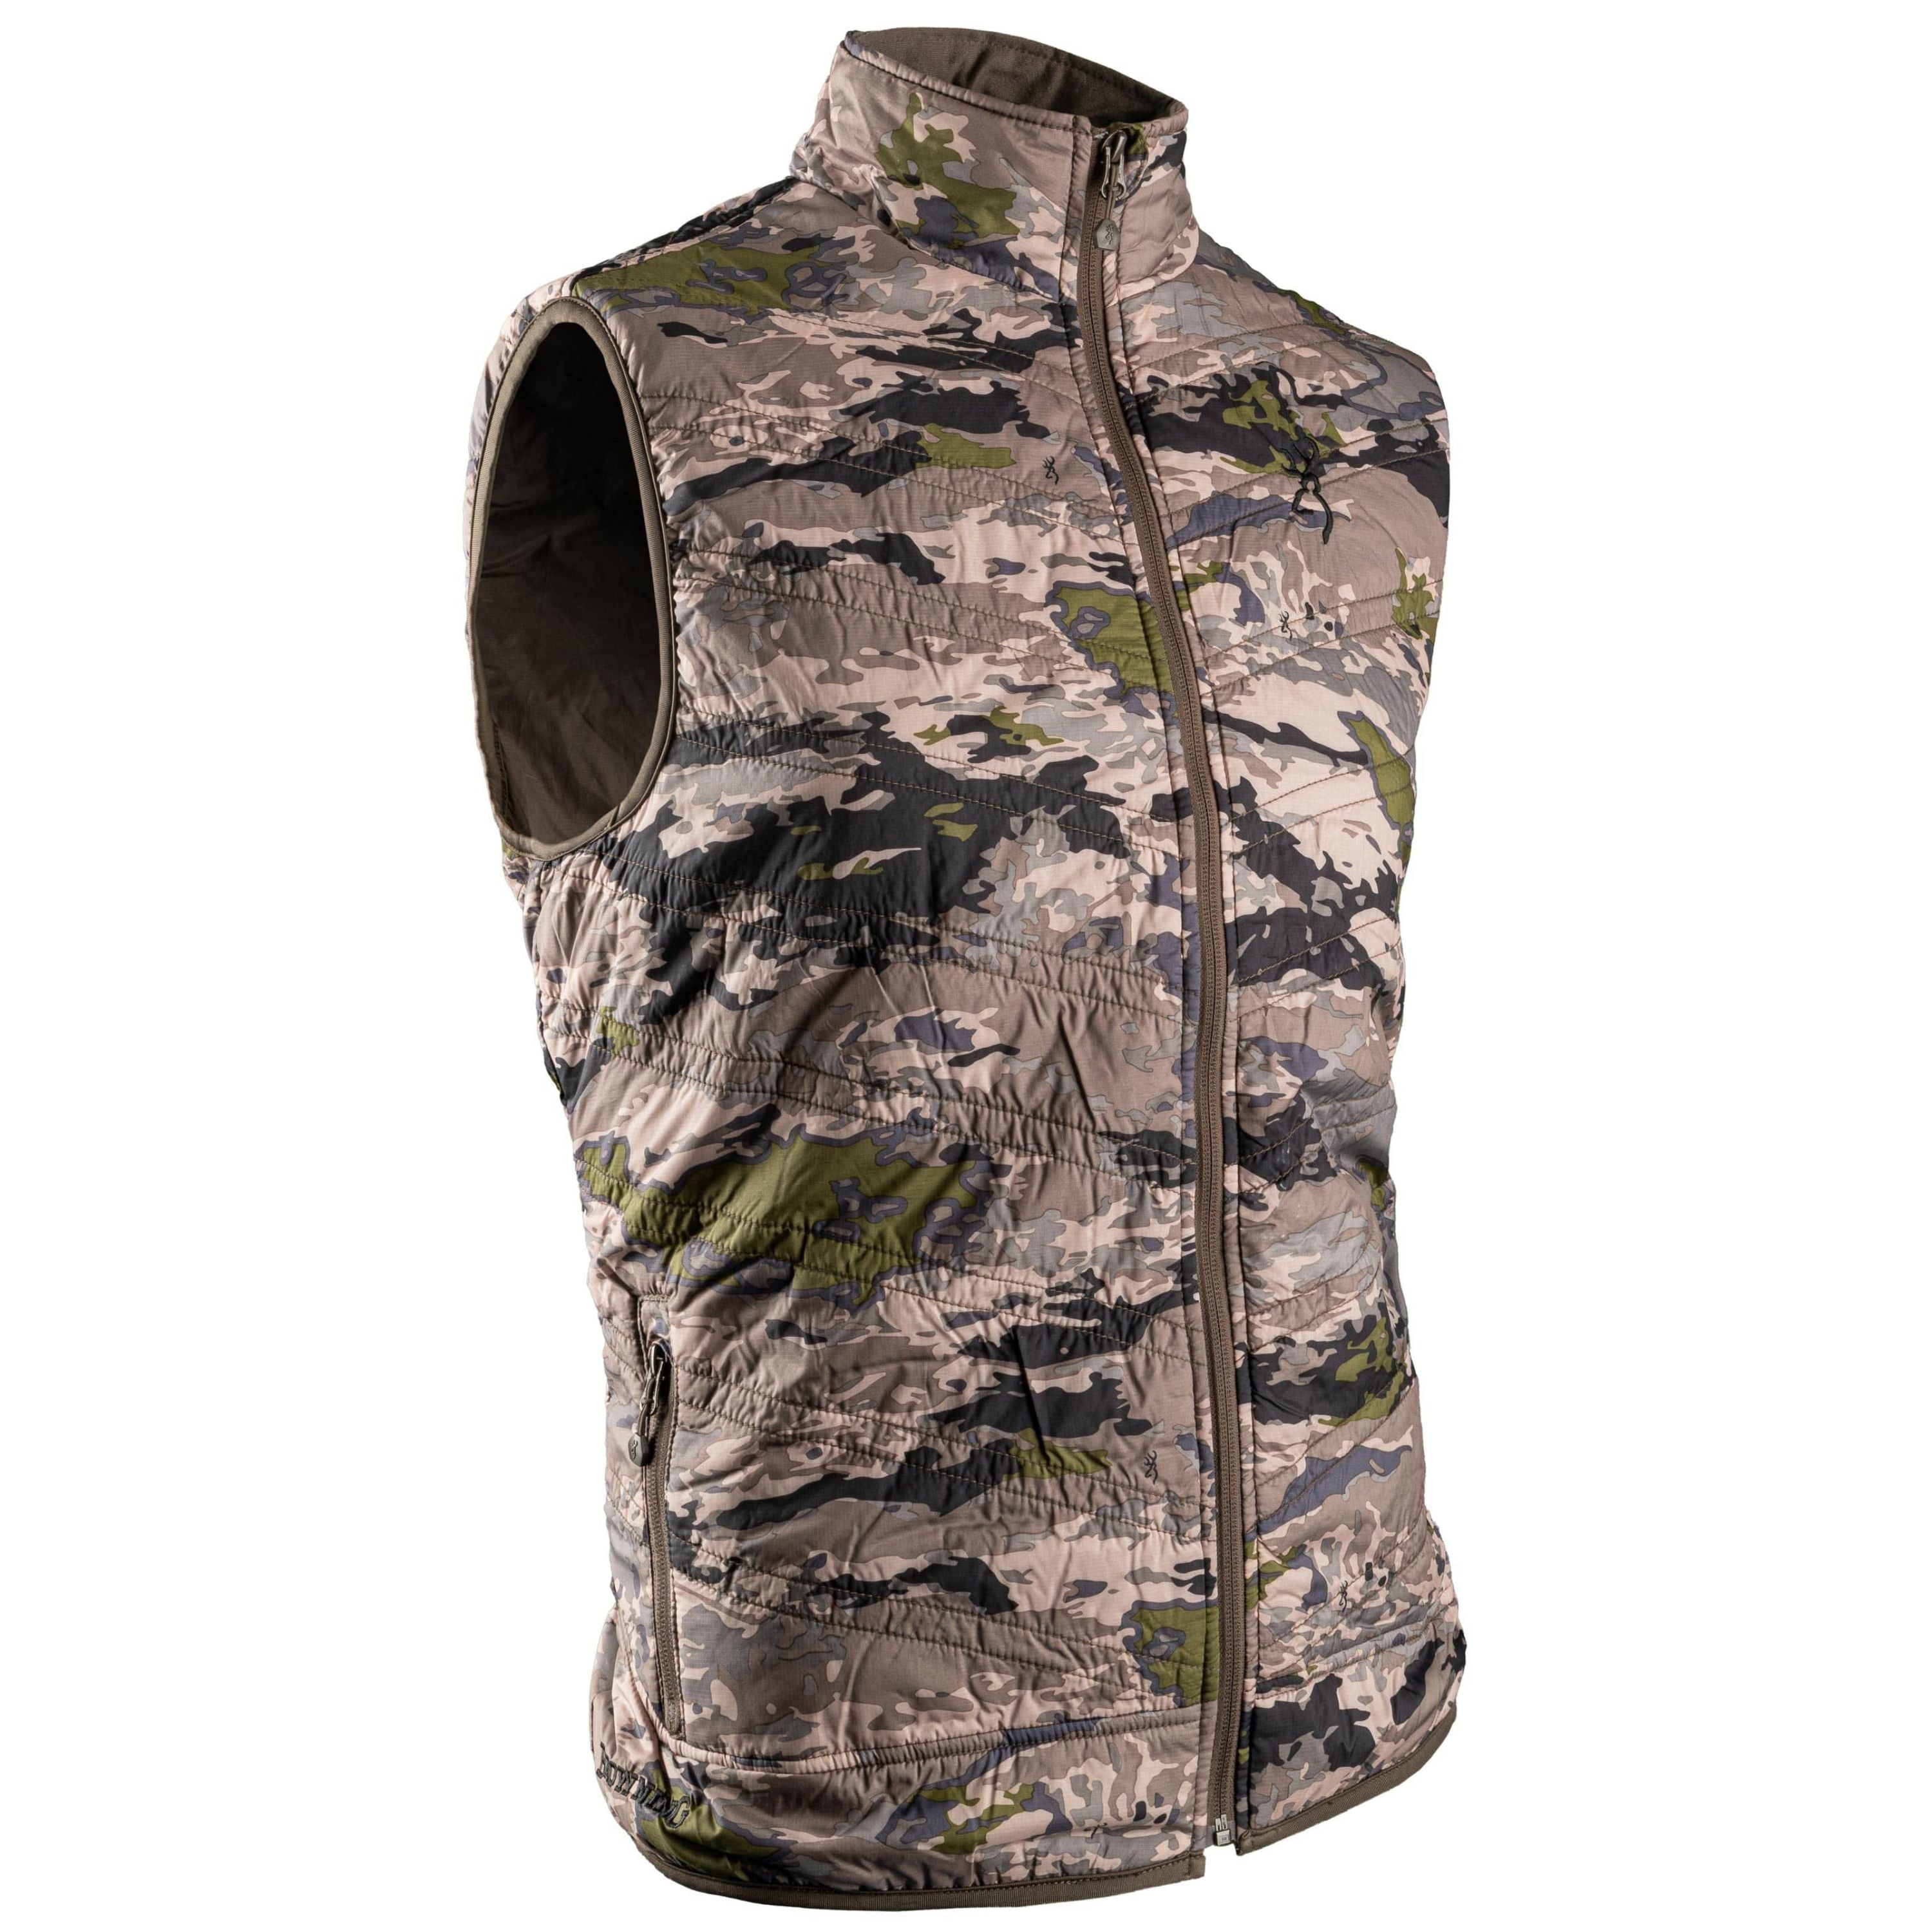 Insulated sleeveless vest - Men's